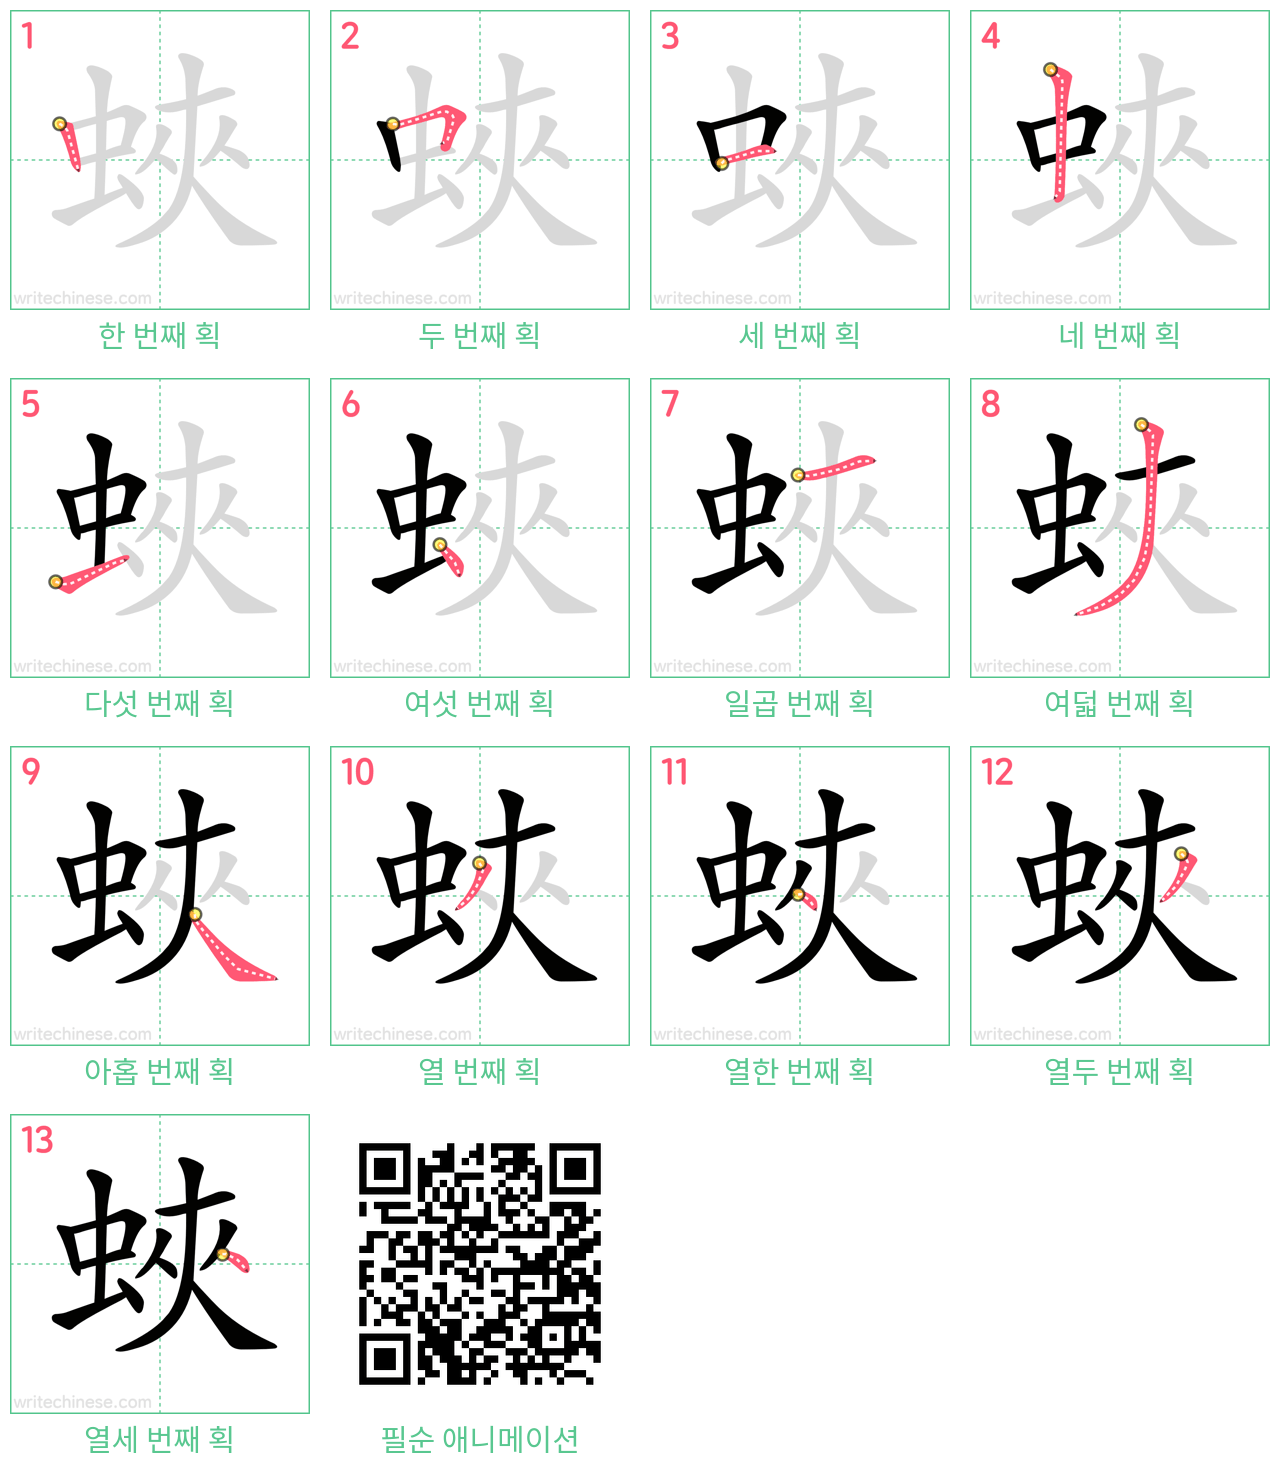 蛺 step-by-step stroke order diagrams